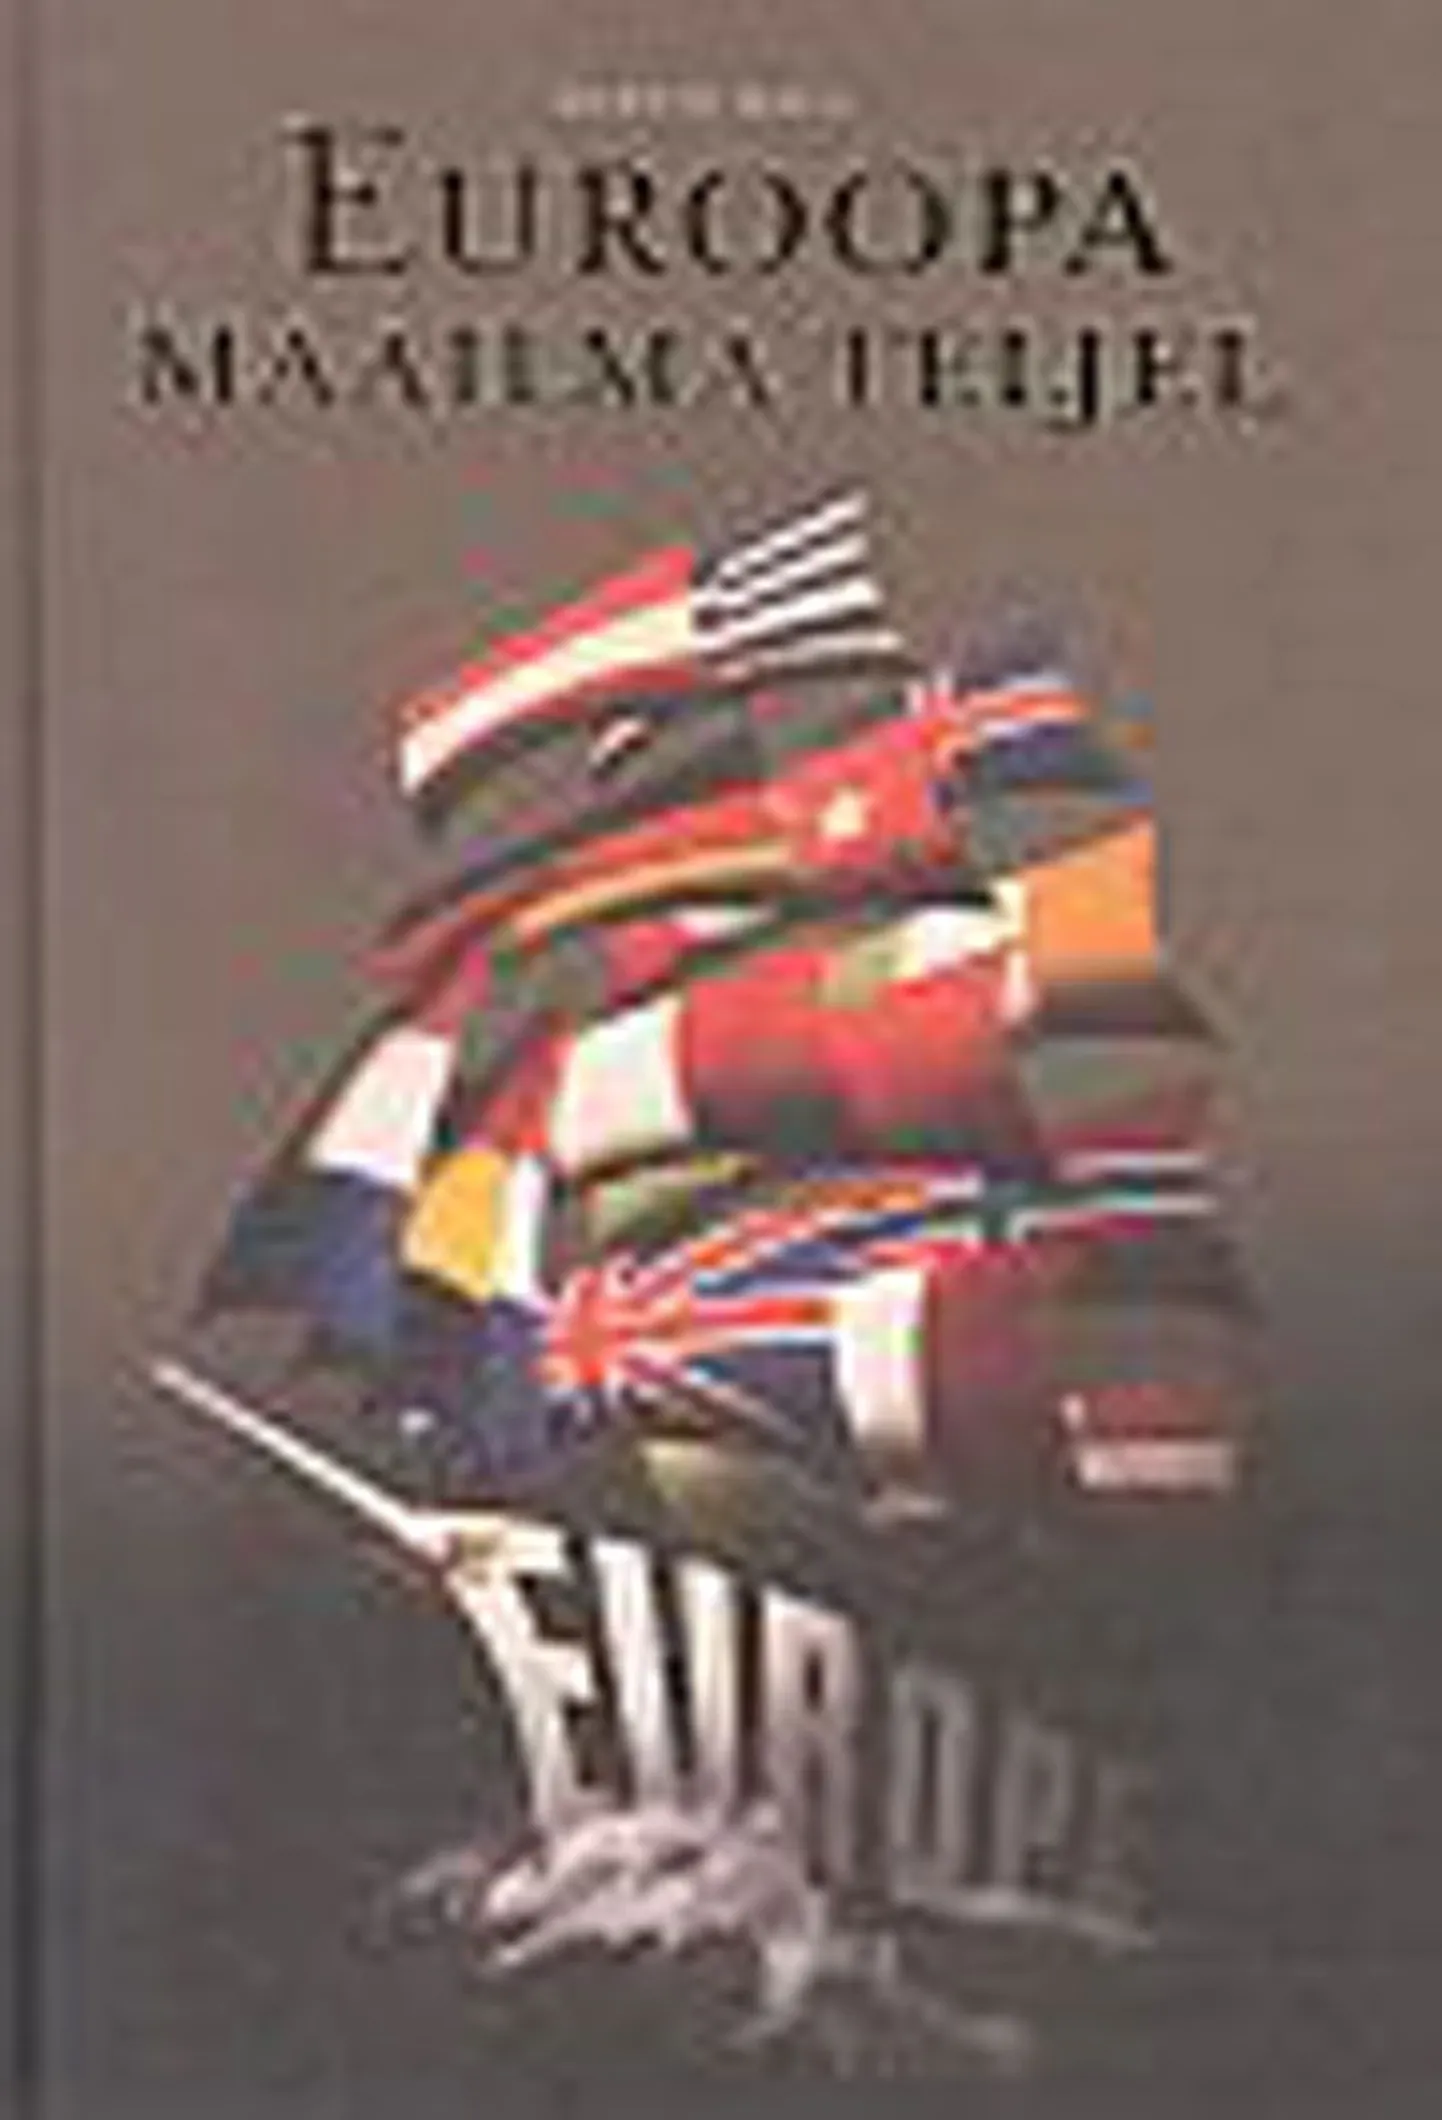 Martin Kala 
«Euroopa maailma teljel» 
Eessõna Siim Kallas 
EPL 2009
318 lk